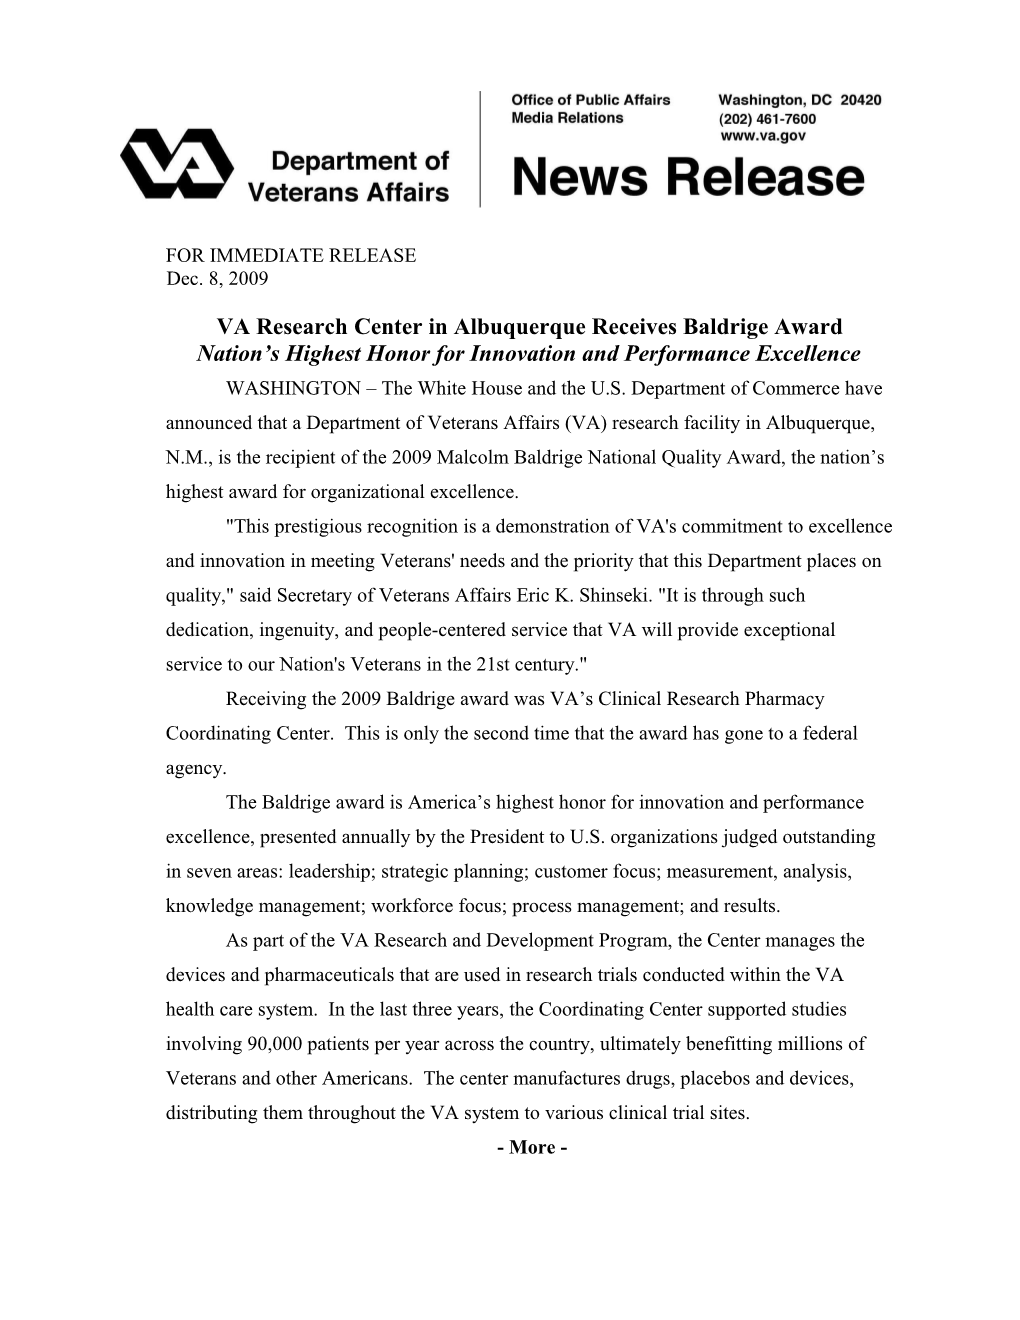 VA Researchcenterin Albuquerque Receives Baldrige Award